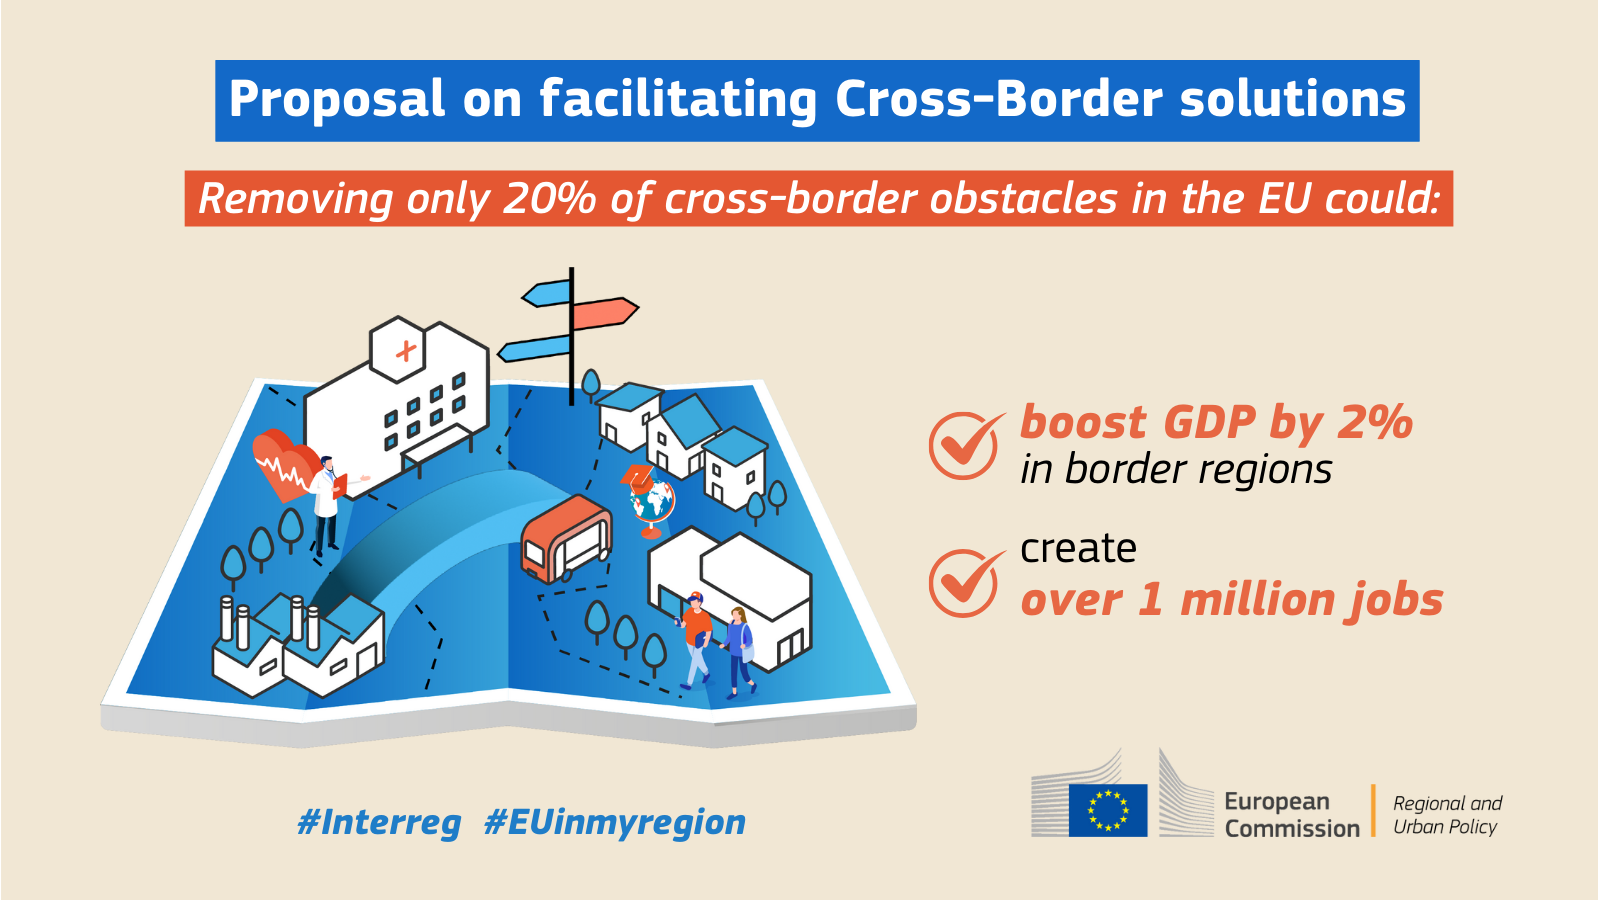 A Bizottság javaslata az egységes piacnak az Európa határ menti régióiban fennálló jogi és közigazgatási akadályok felszámolása révén történő megerősítésére